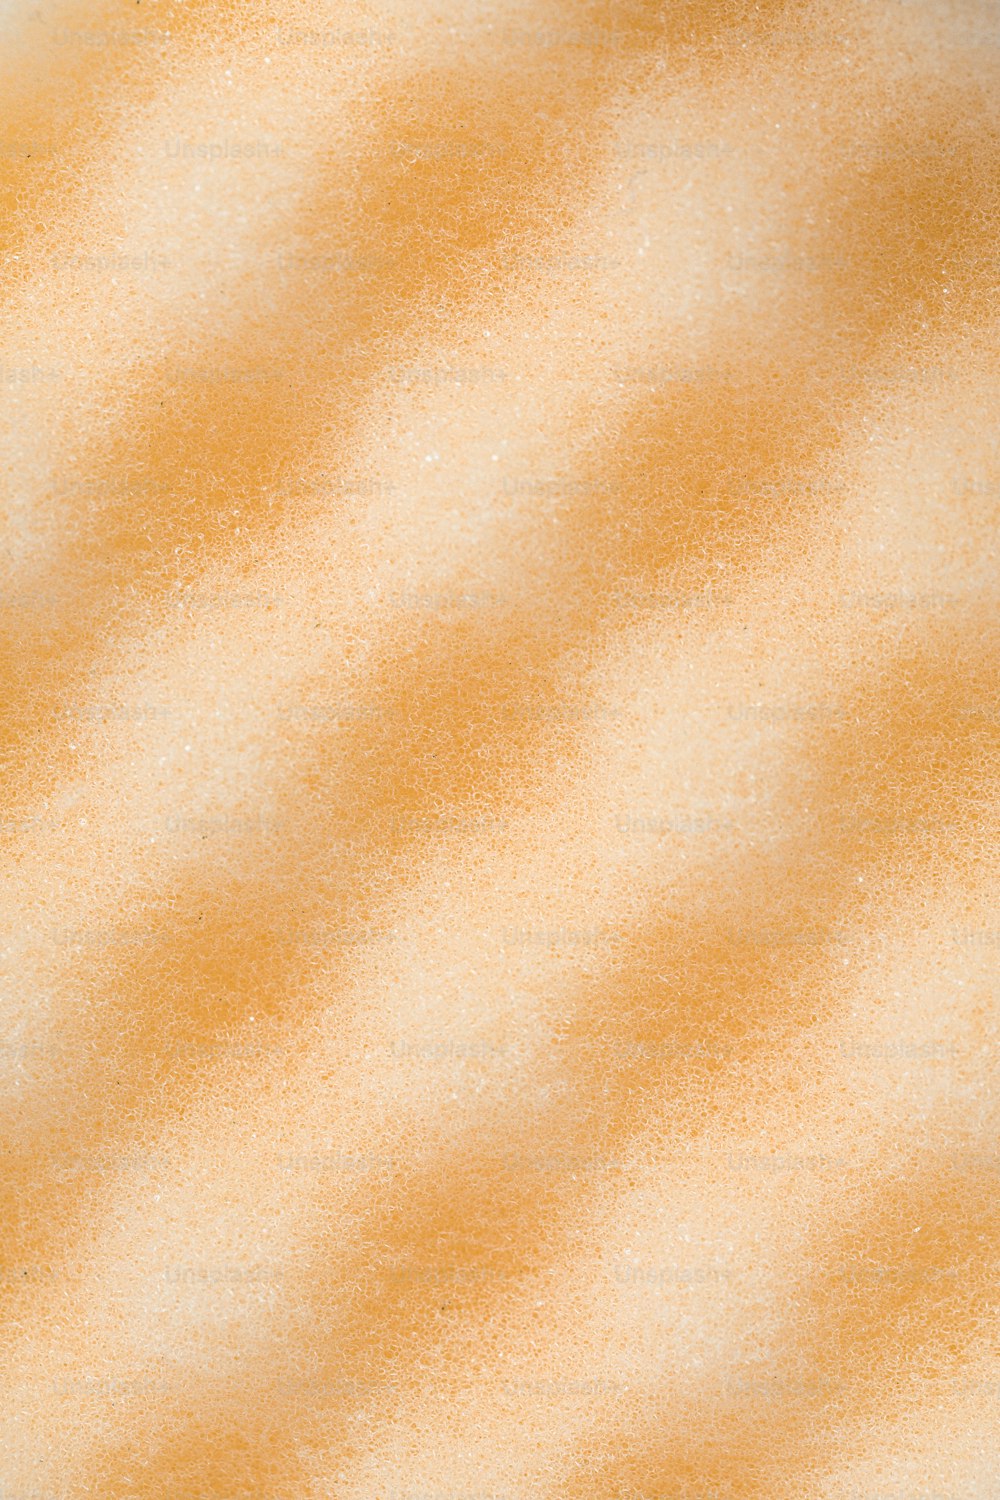 un primo piano di uno sfondo arancione e bianco